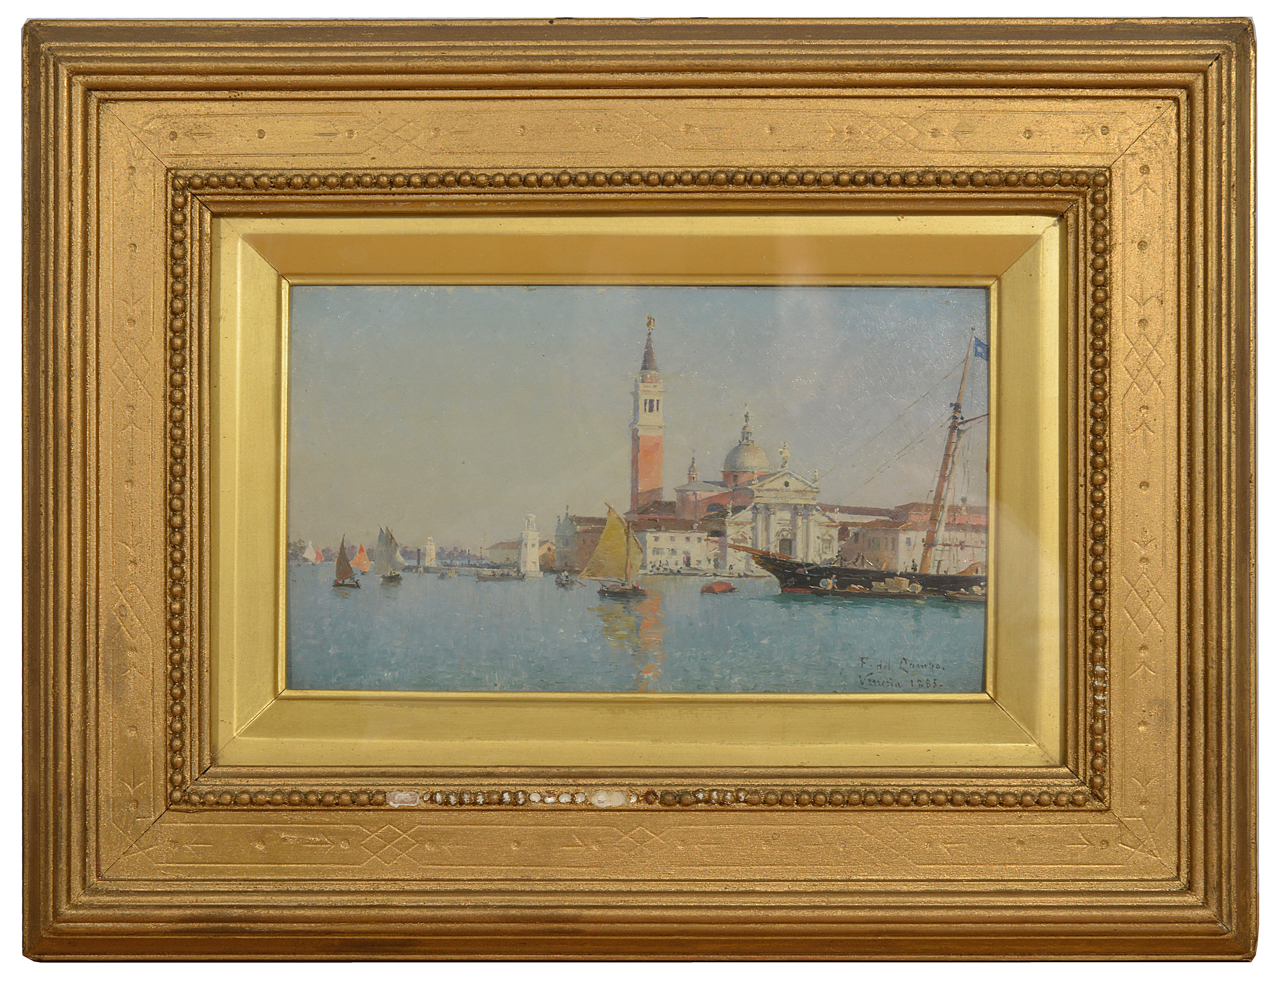 Federico del Campo (Peruvian 1837-1927) 'San Giorgio Maggiore, Venice' signed and dated lower